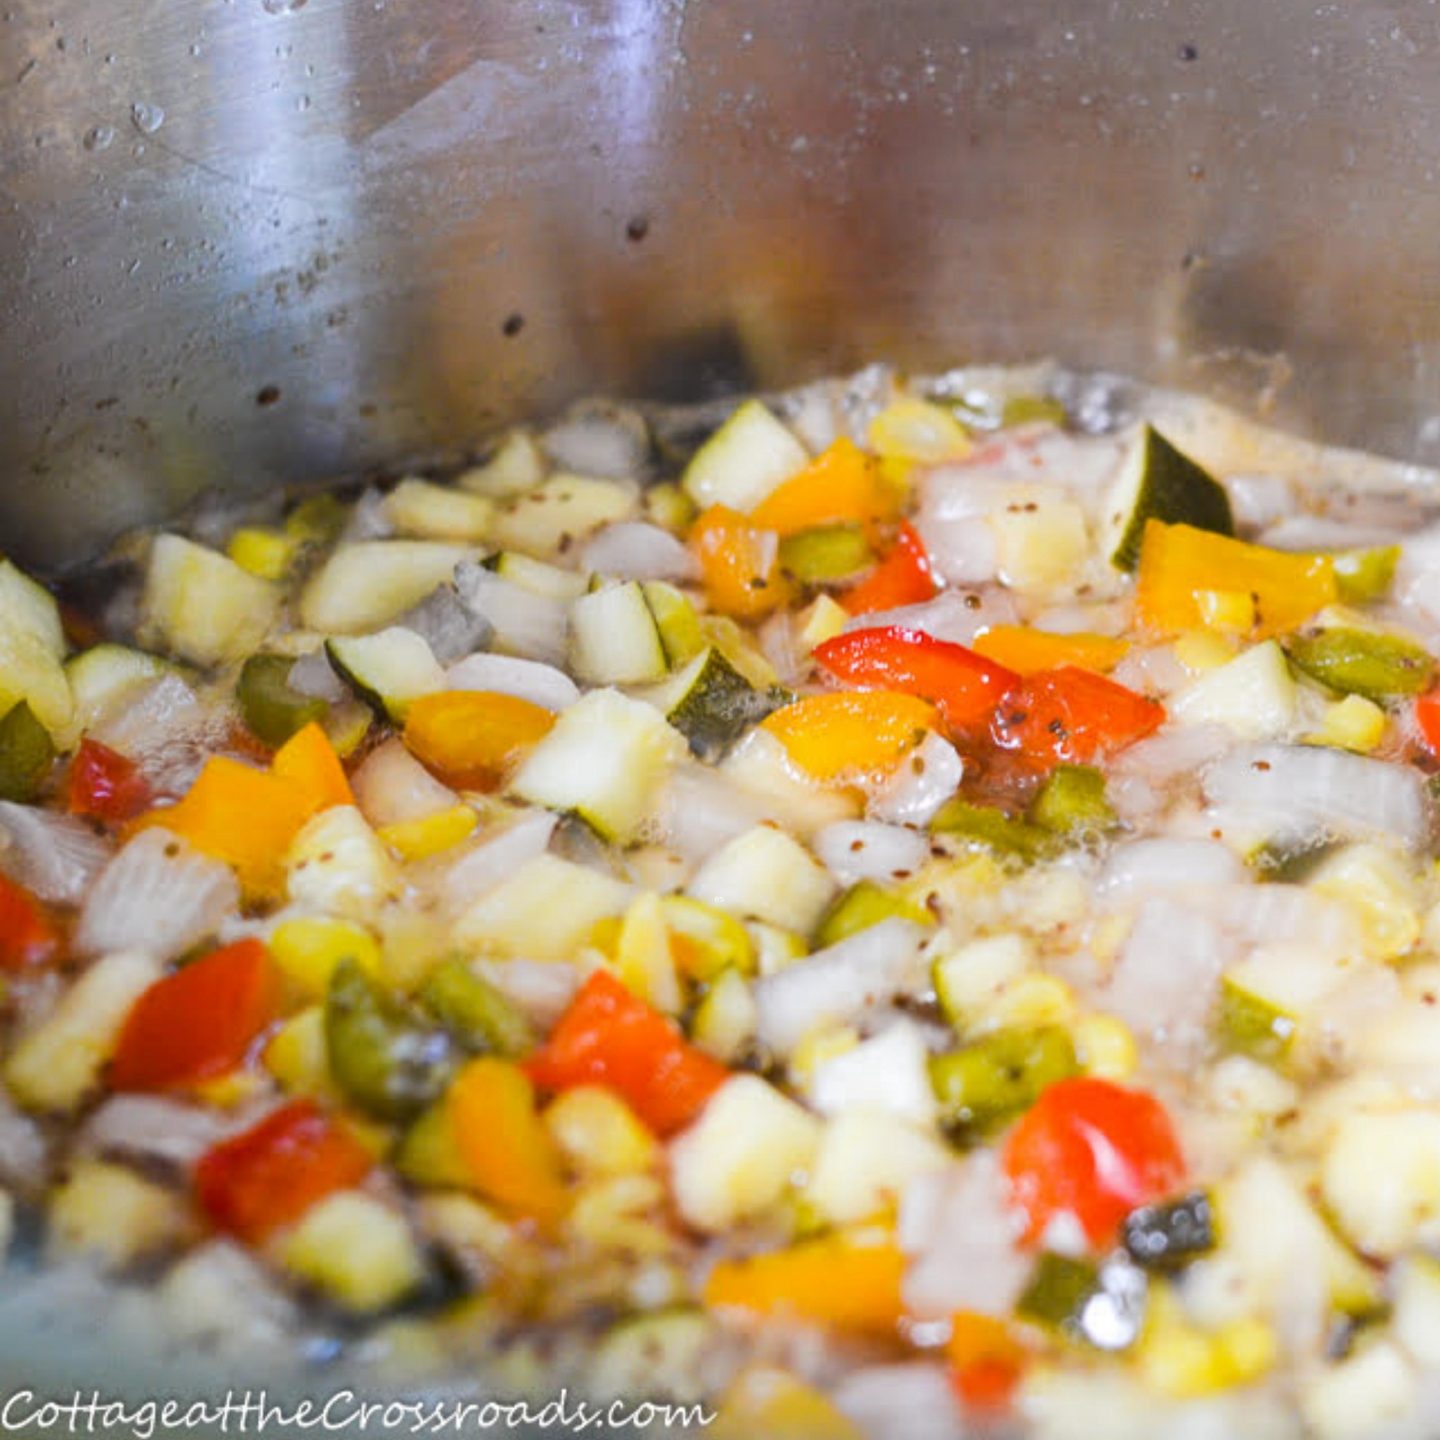 Mixture of vegetables on pan